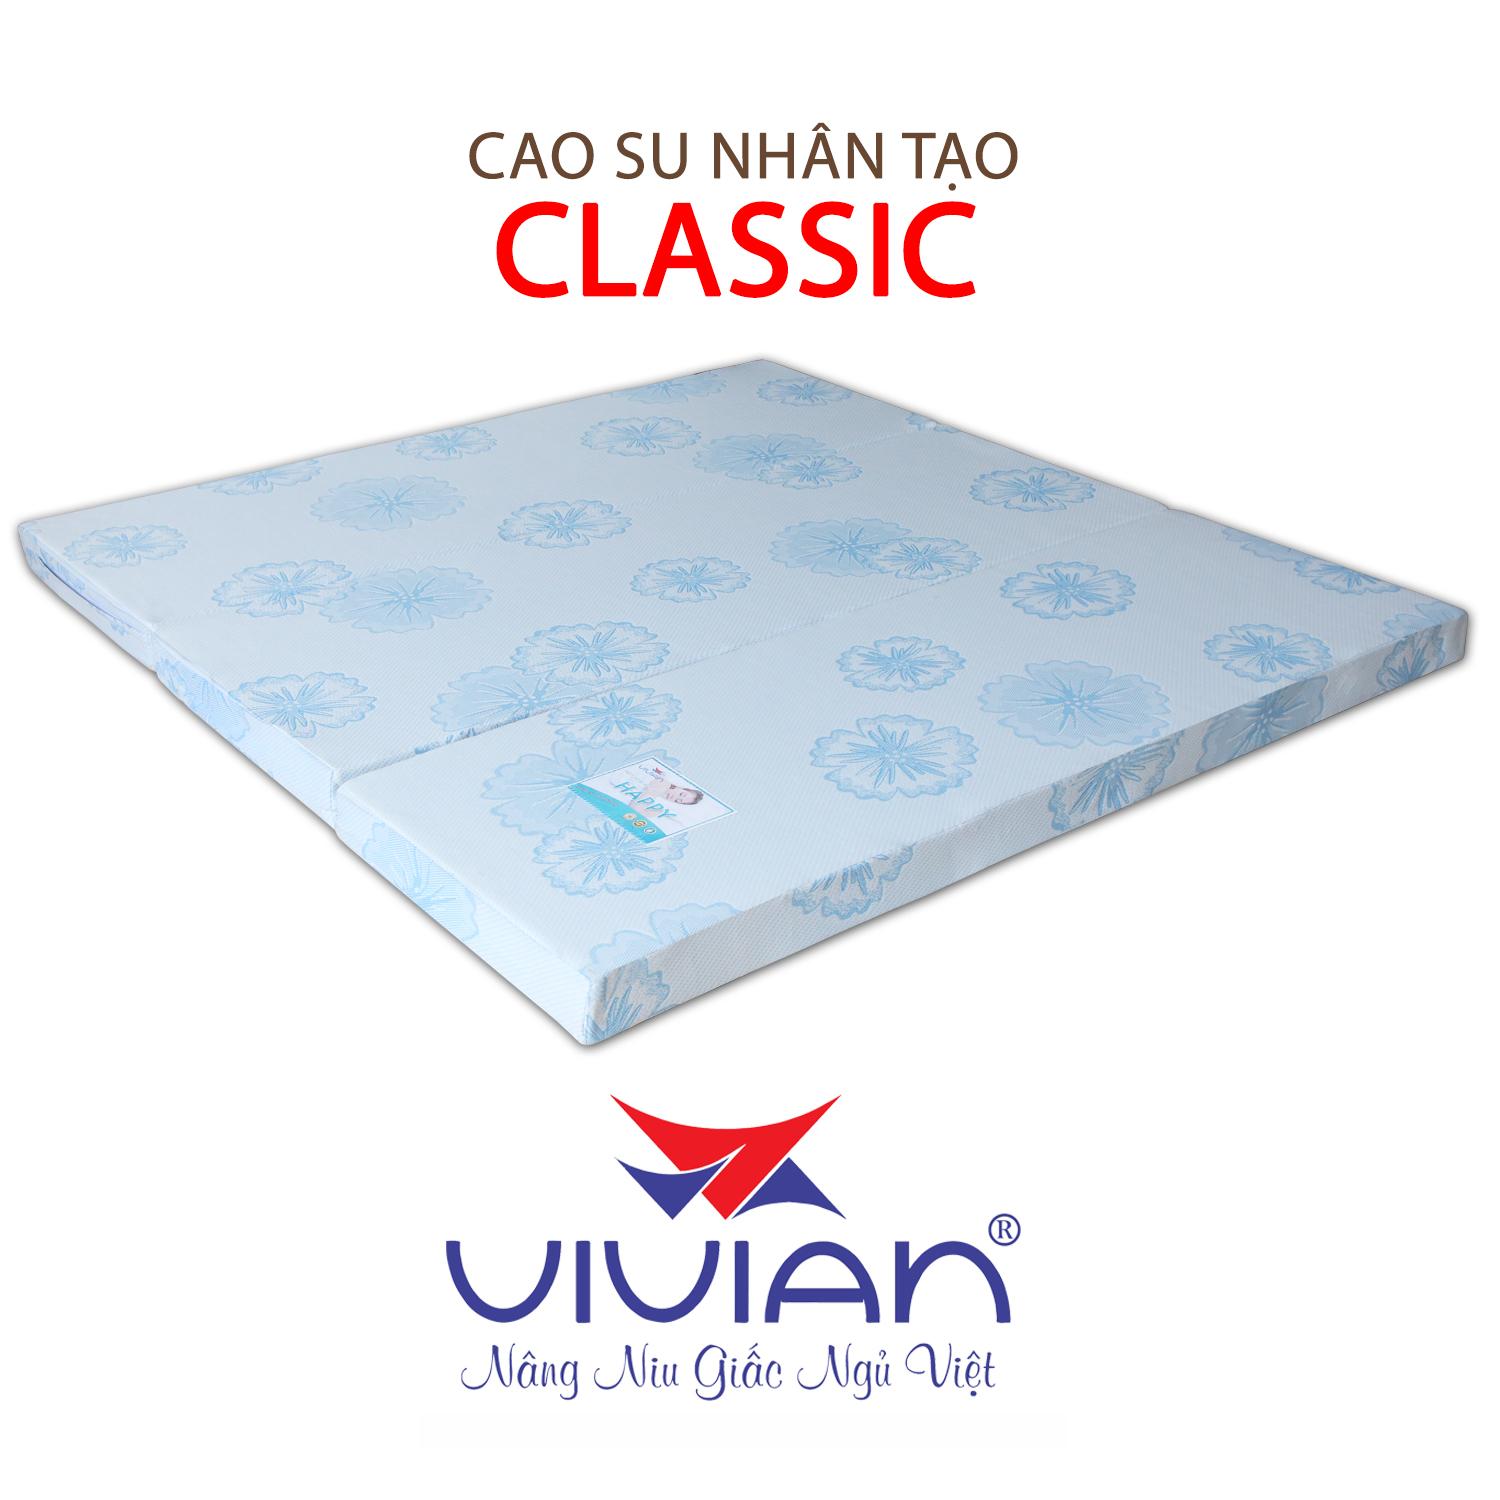 NỆM CAO SU NHÂN TẠO CLASSIC GẤP 3 VIVIAN 100X200X15